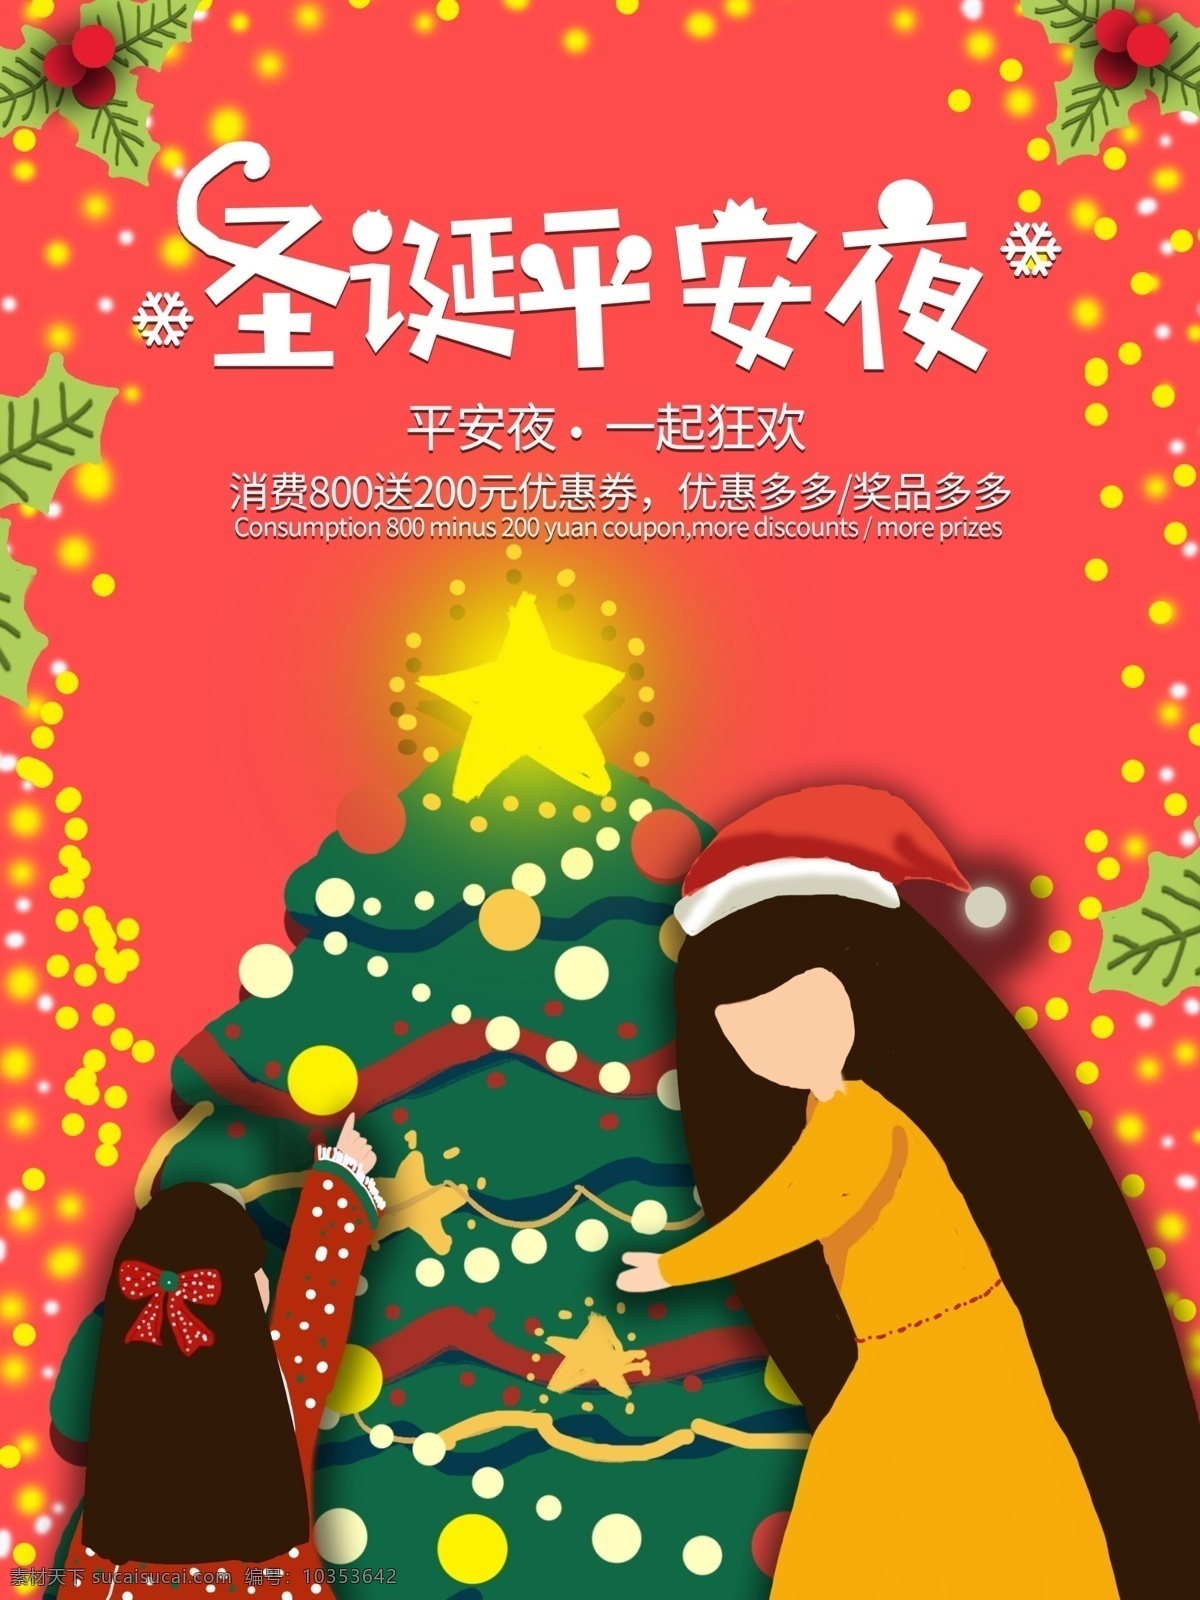 原创 手绘 圣诞 平安夜 海报 插画 促销 圣诞节 圣诞树 星星 打折 女人 下雪